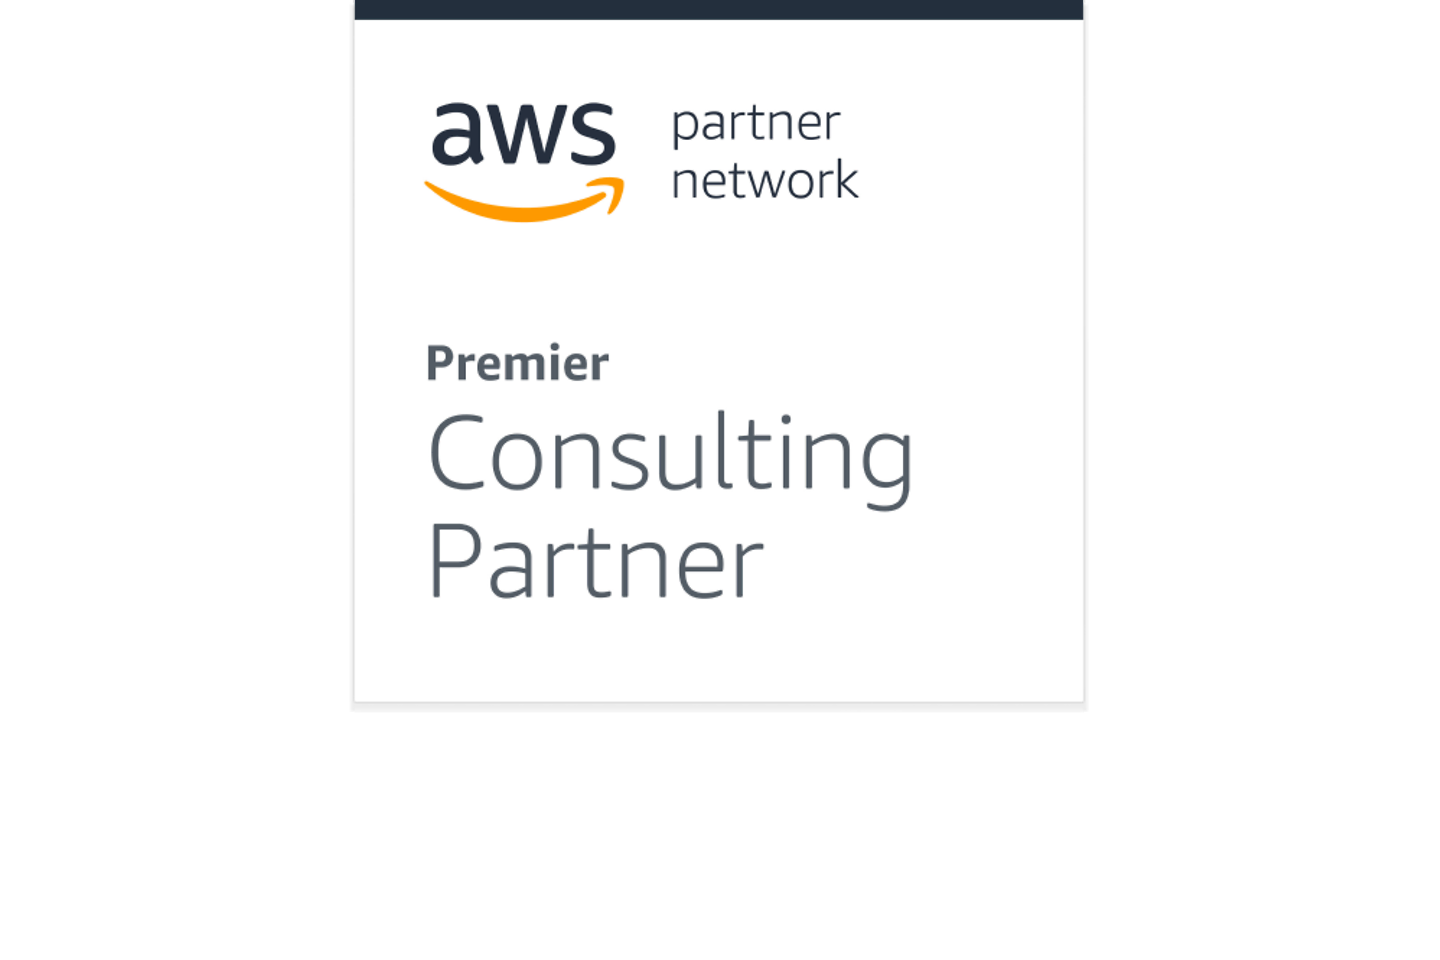 AWS Partner Network – Premier Consulting Partner